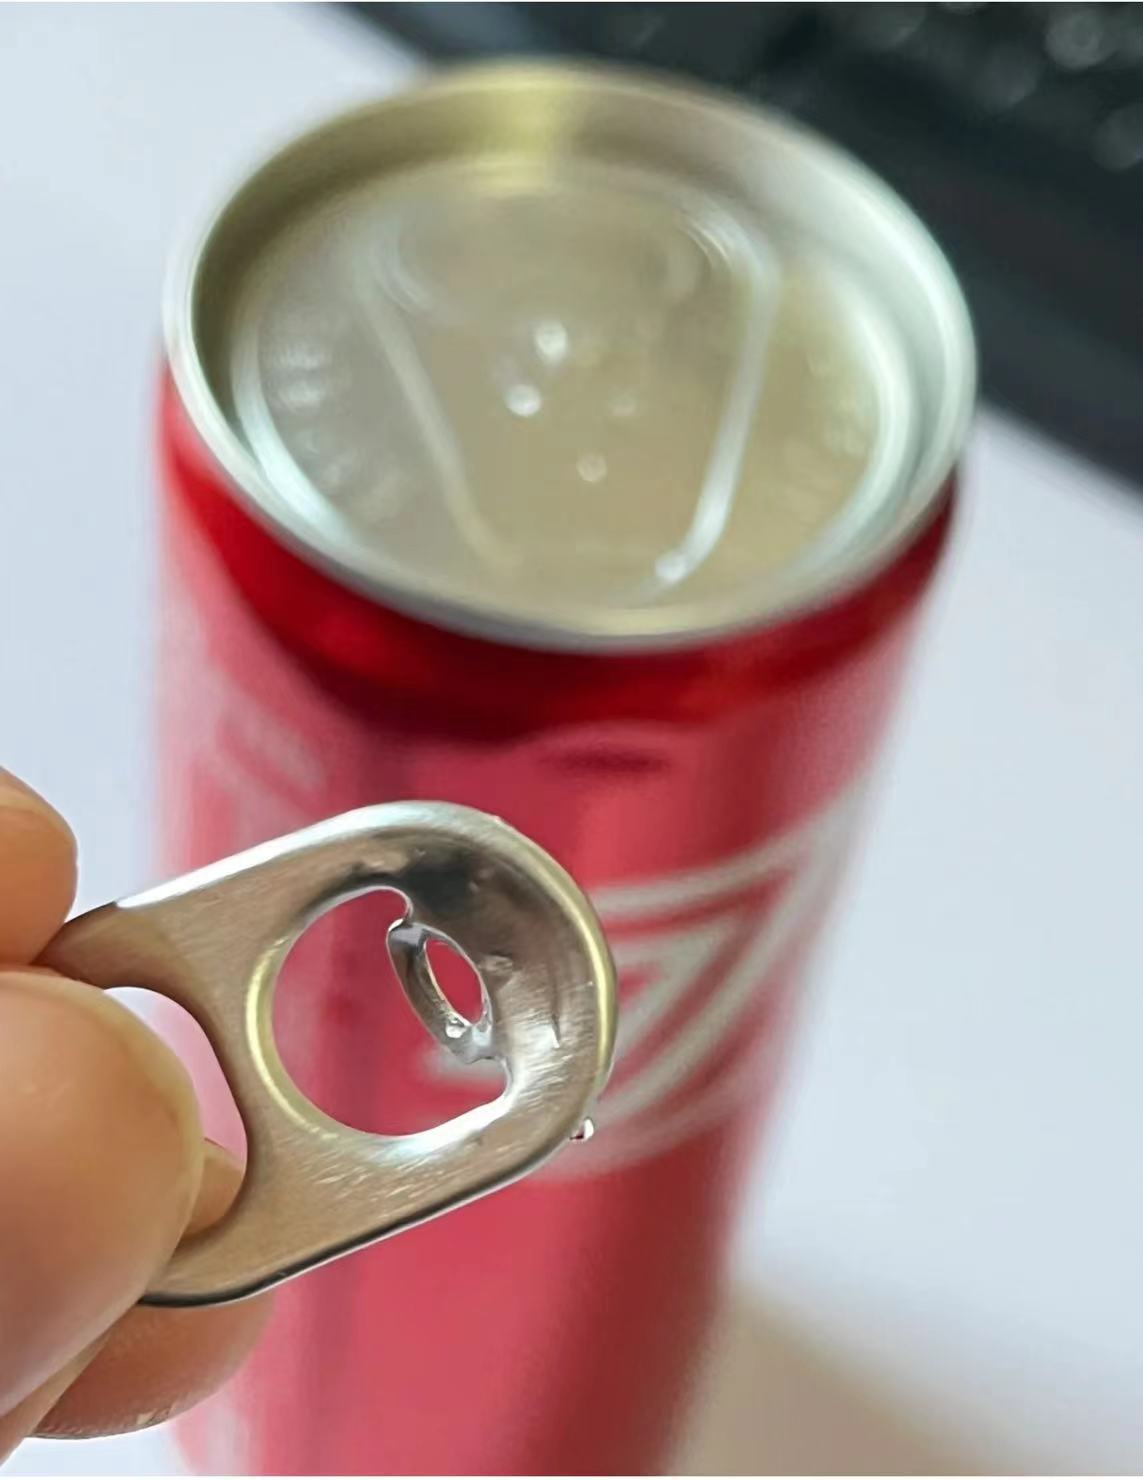 "O que fazer quando o Pop Tab quebra em sua lata de refrigerante? Dicas e truques úteis!"